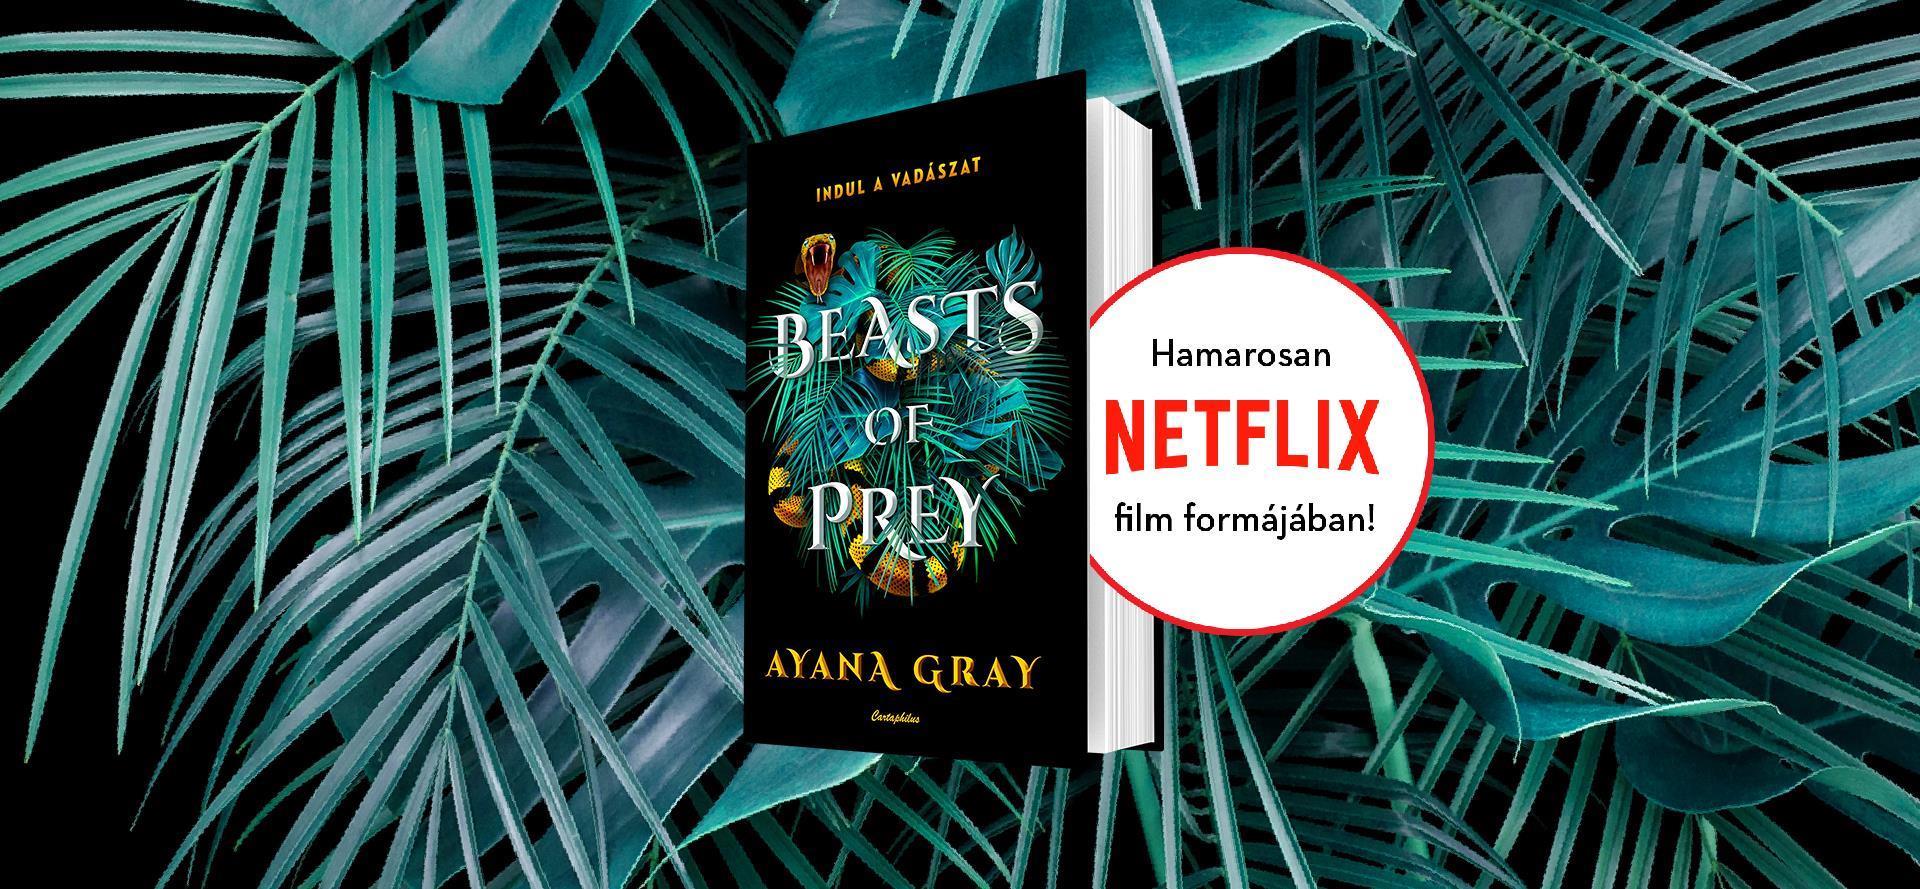 Végre magyarul is elérhető lesz Ayana Gray hatalmas nemzetközi népszerűségre szert tevő könyve, a Beasts of Prey – Indul a vadászat!